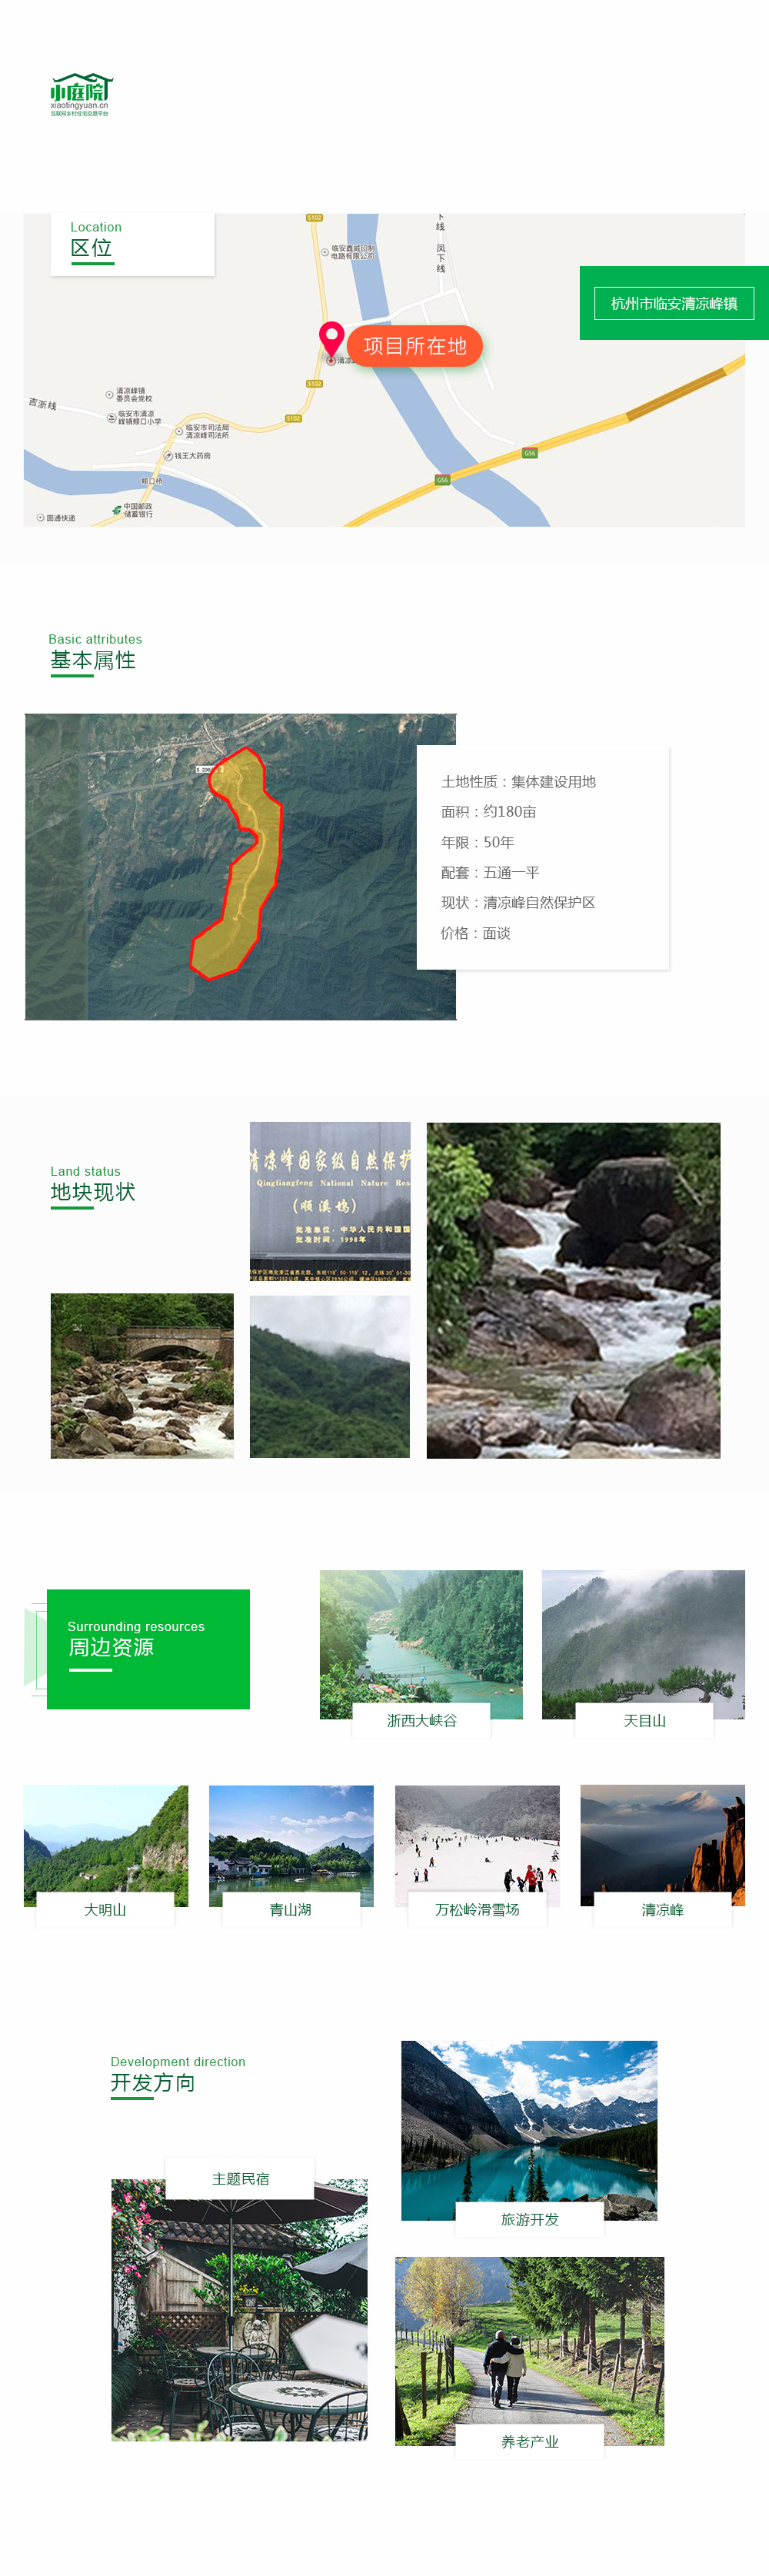 清凉峰镇自然保护区